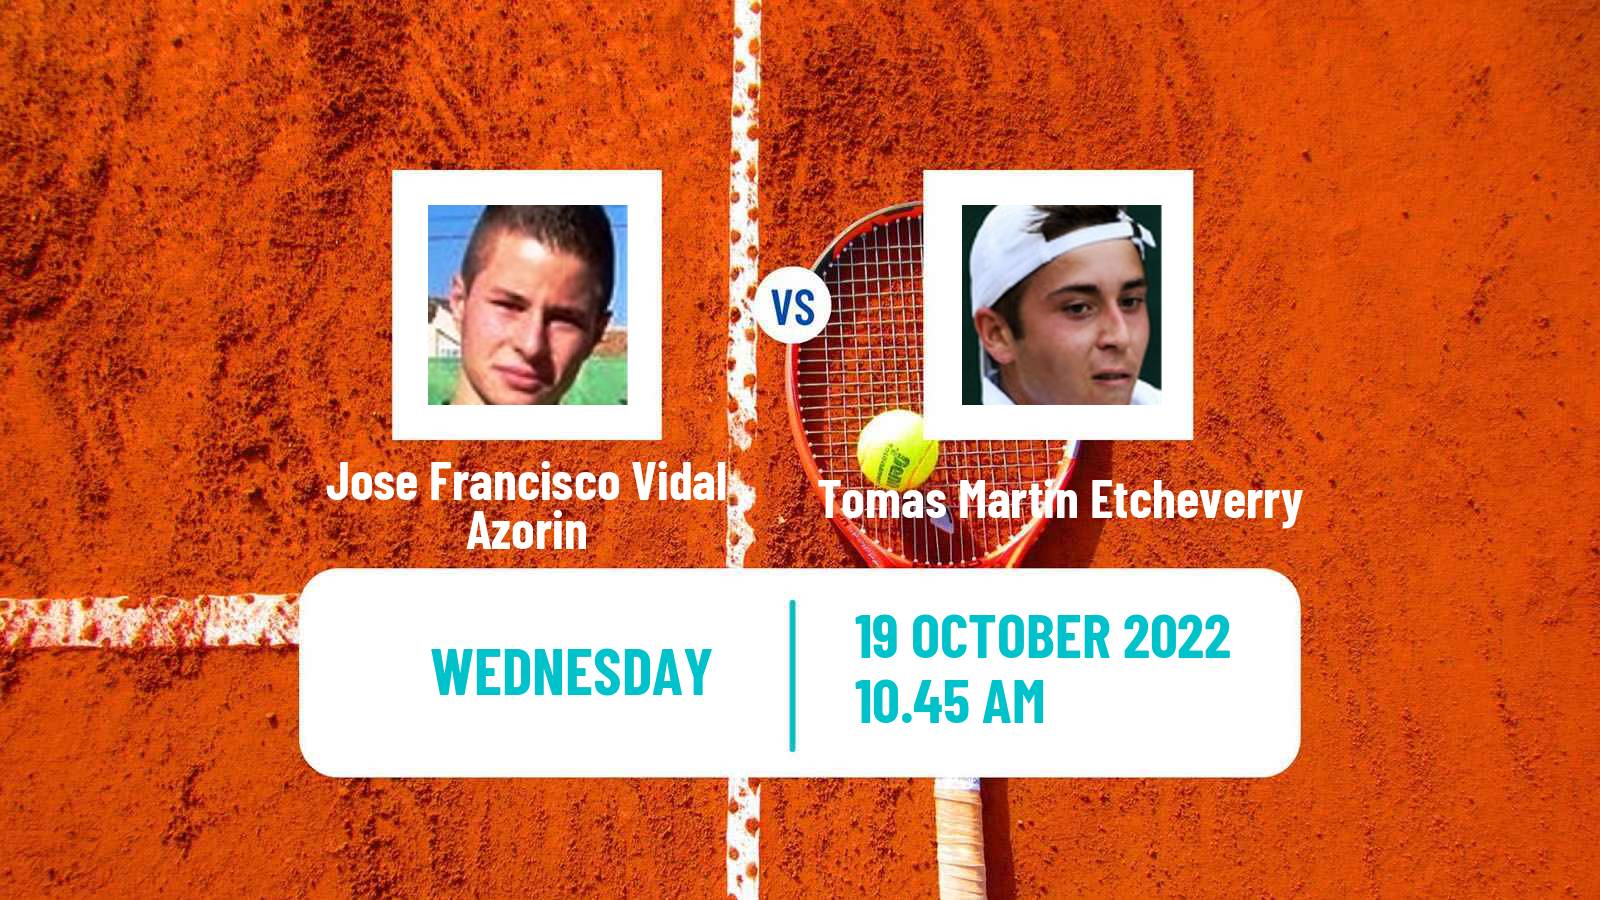 Tennis ATP Challenger Jose Francisco Vidal Azorin - Tomas Martin Etcheverry